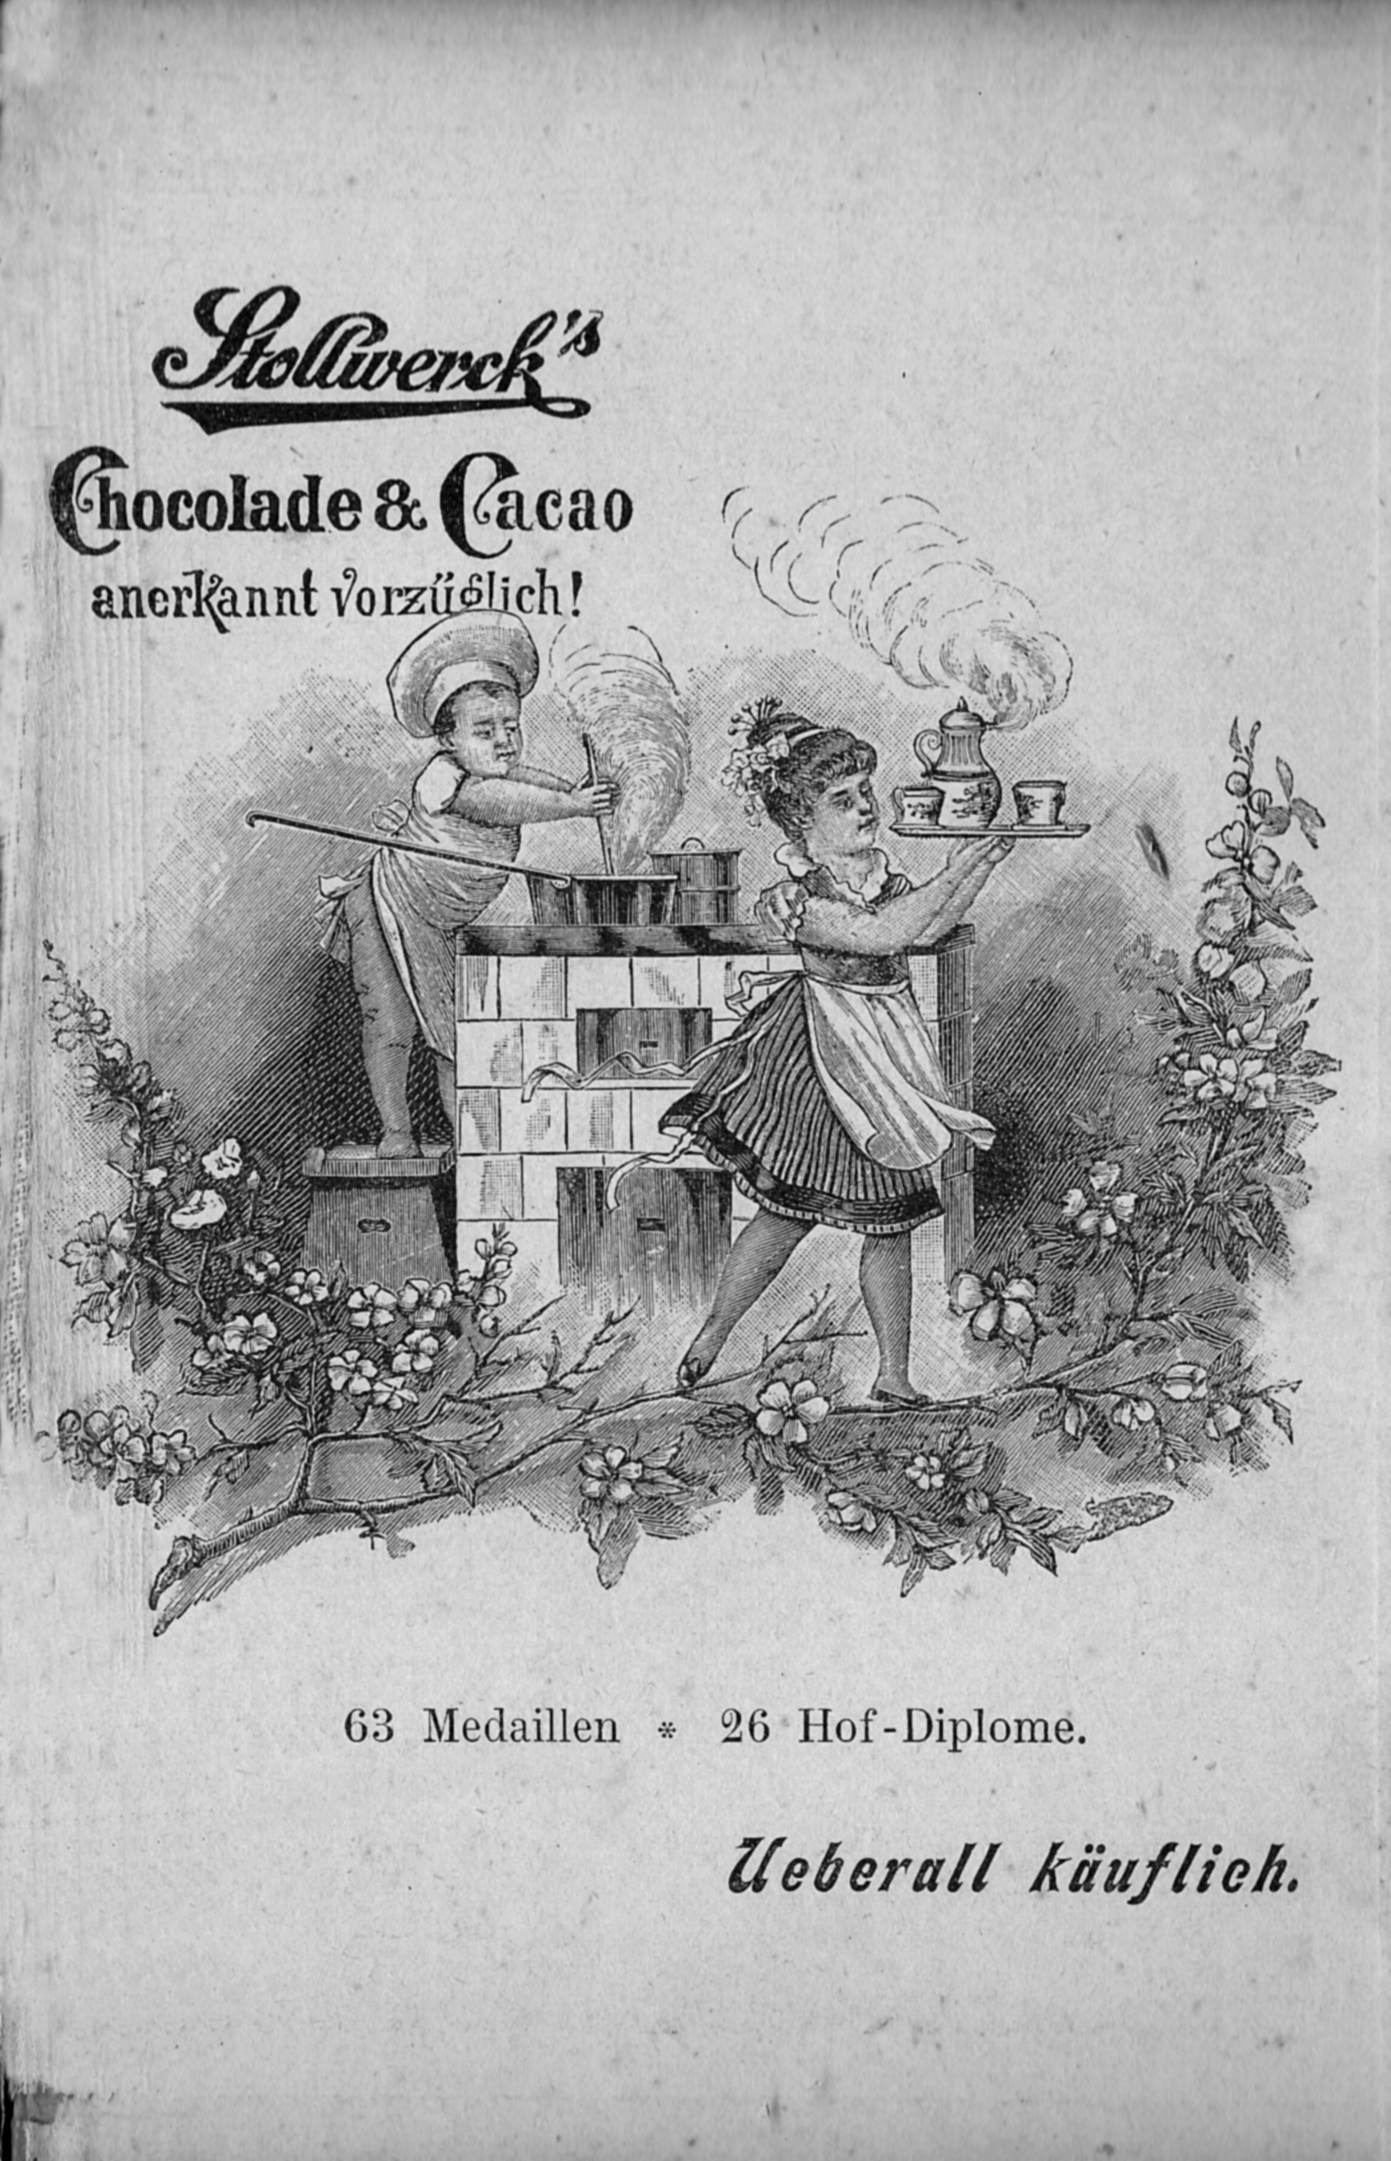 Werbung der Firma Stollwerck, aus: Jahrbuch der Berliner Morgenzeitung, 1896.